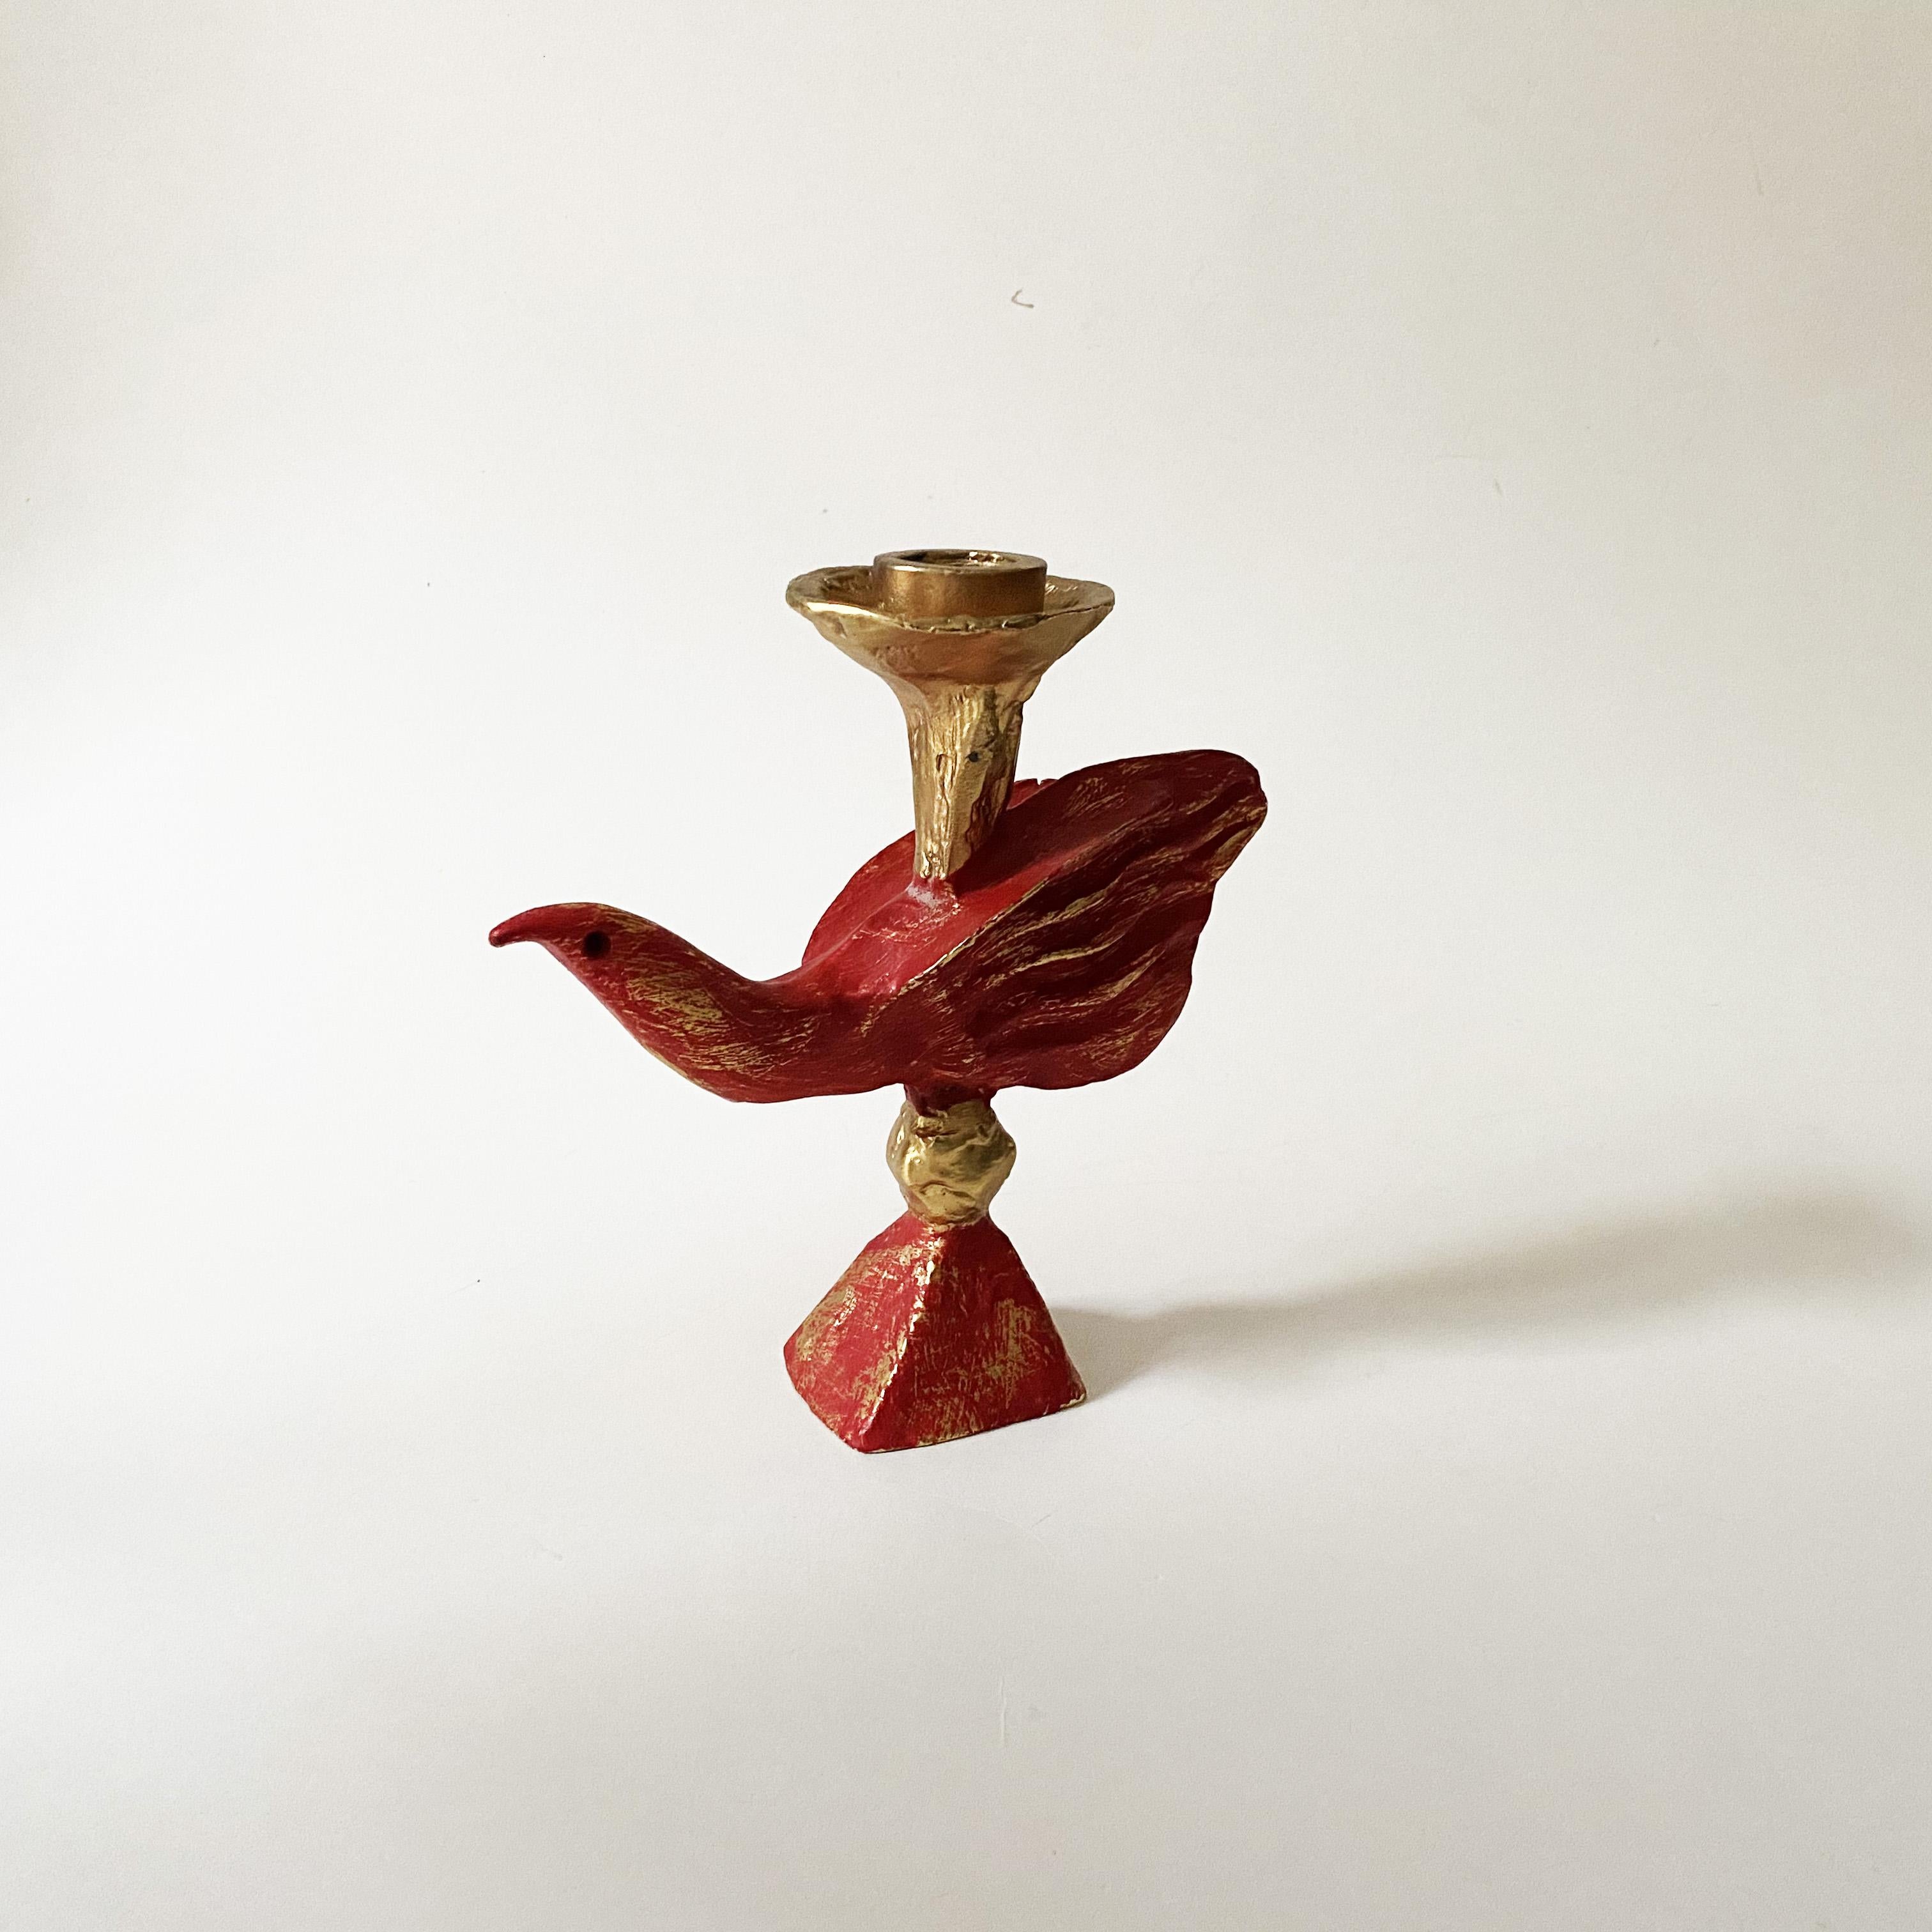 Vergoldeter skulpturaler Vogel-Leuchter aus Aluminiumguss von Pierre Casenove für Fondica, 1990er Jahre.